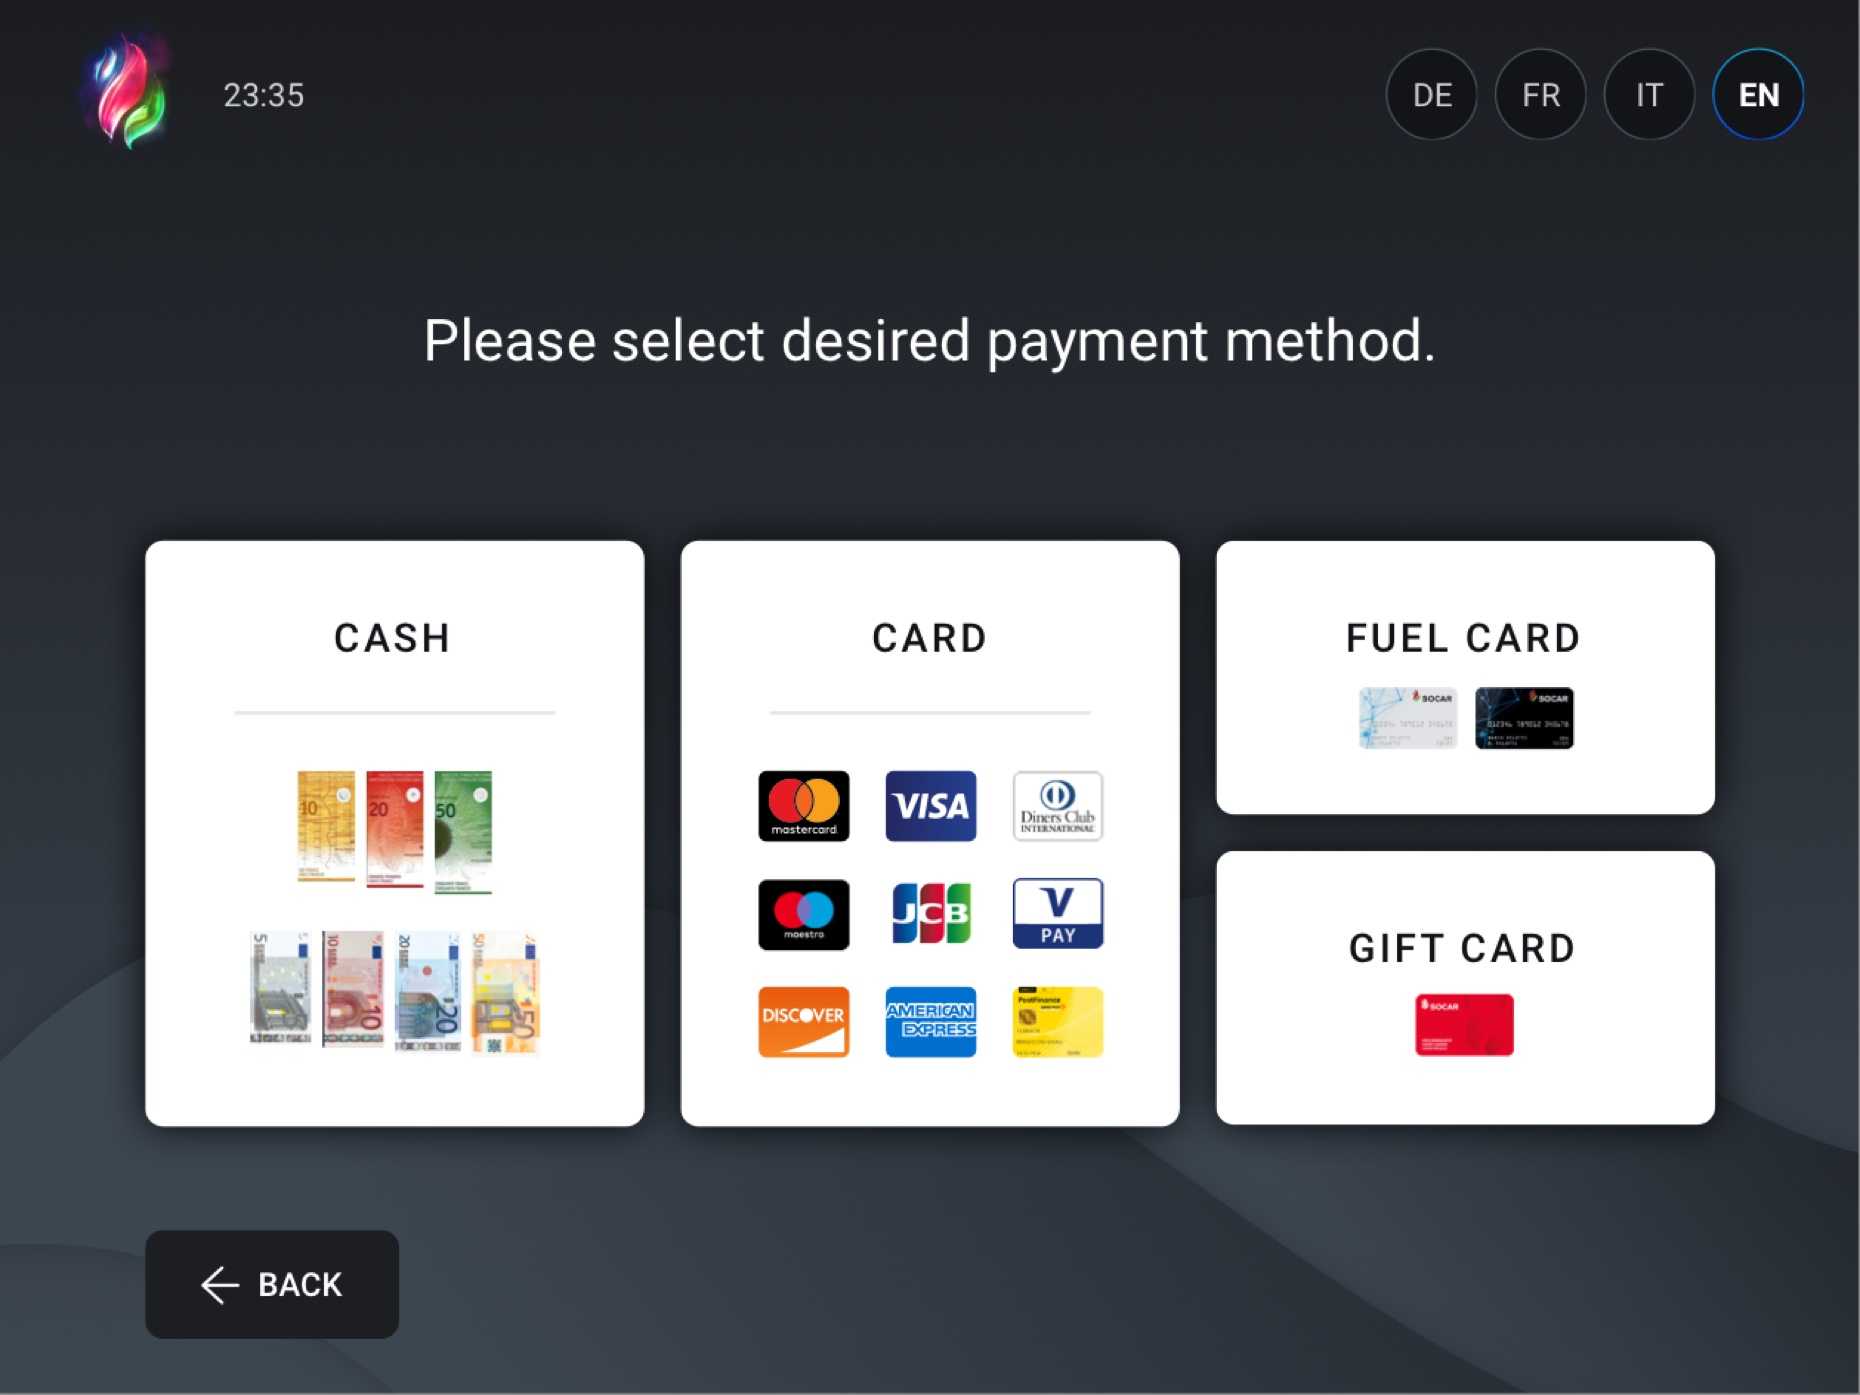 UI-design för ett inbäddat system där användaren väljer betalningsmetod i en självbetjäning.